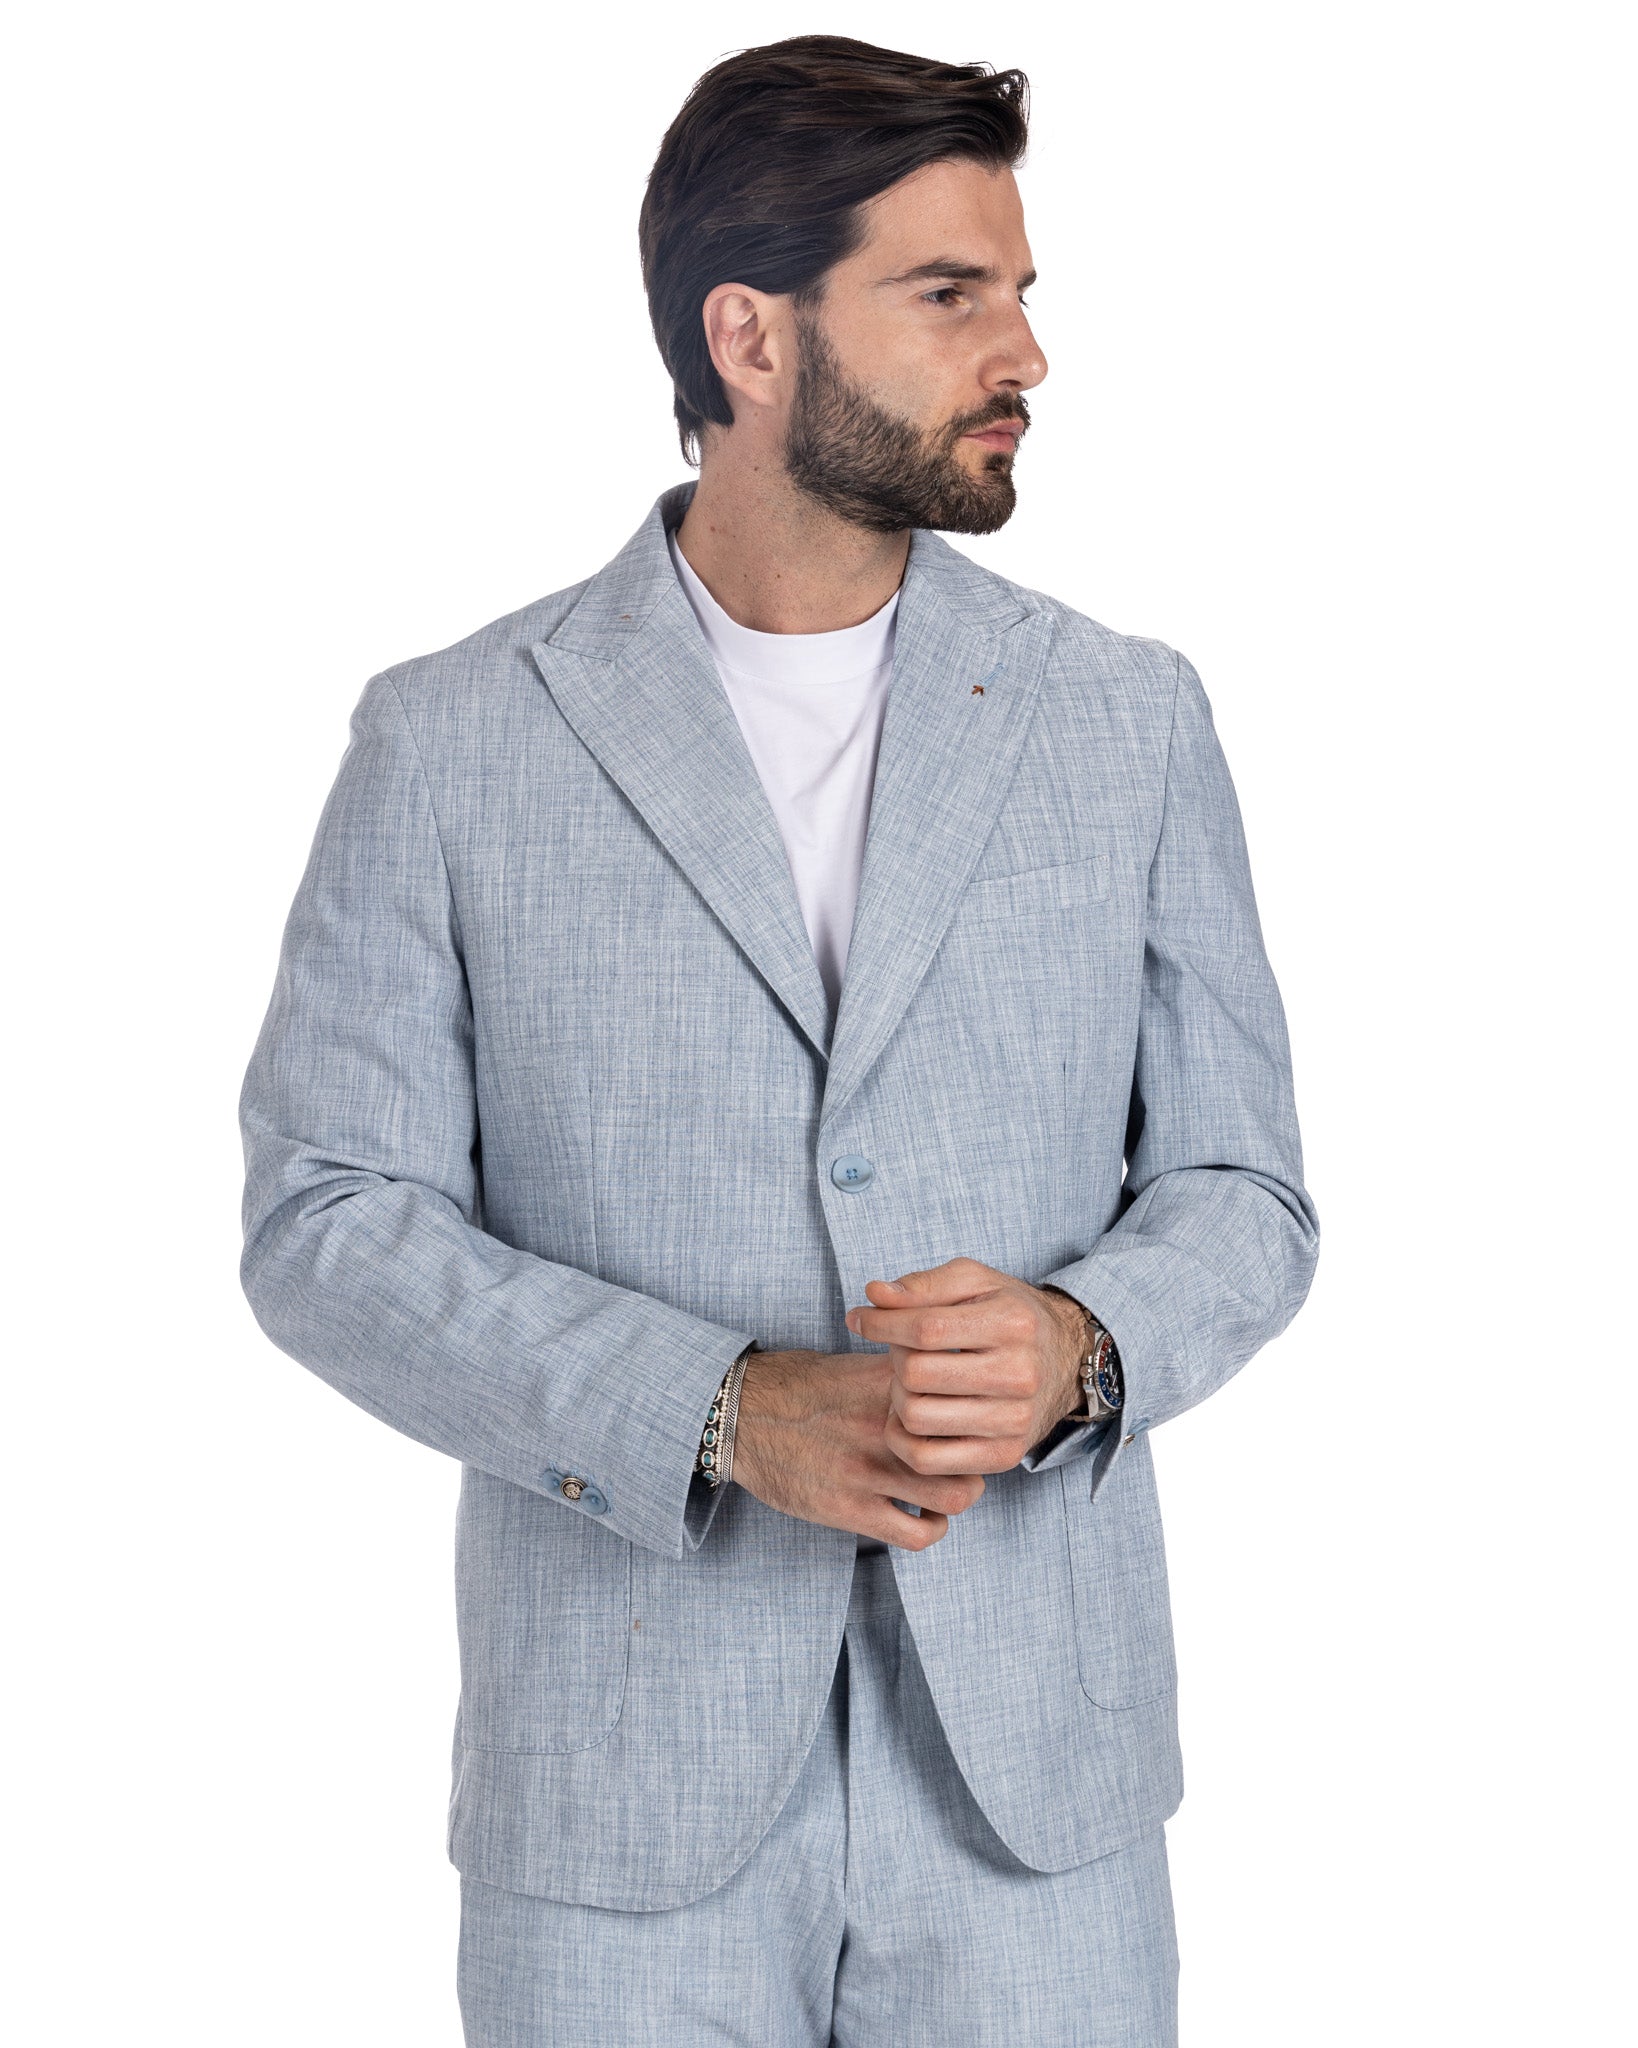 Lipari - light blue single-breasted suit